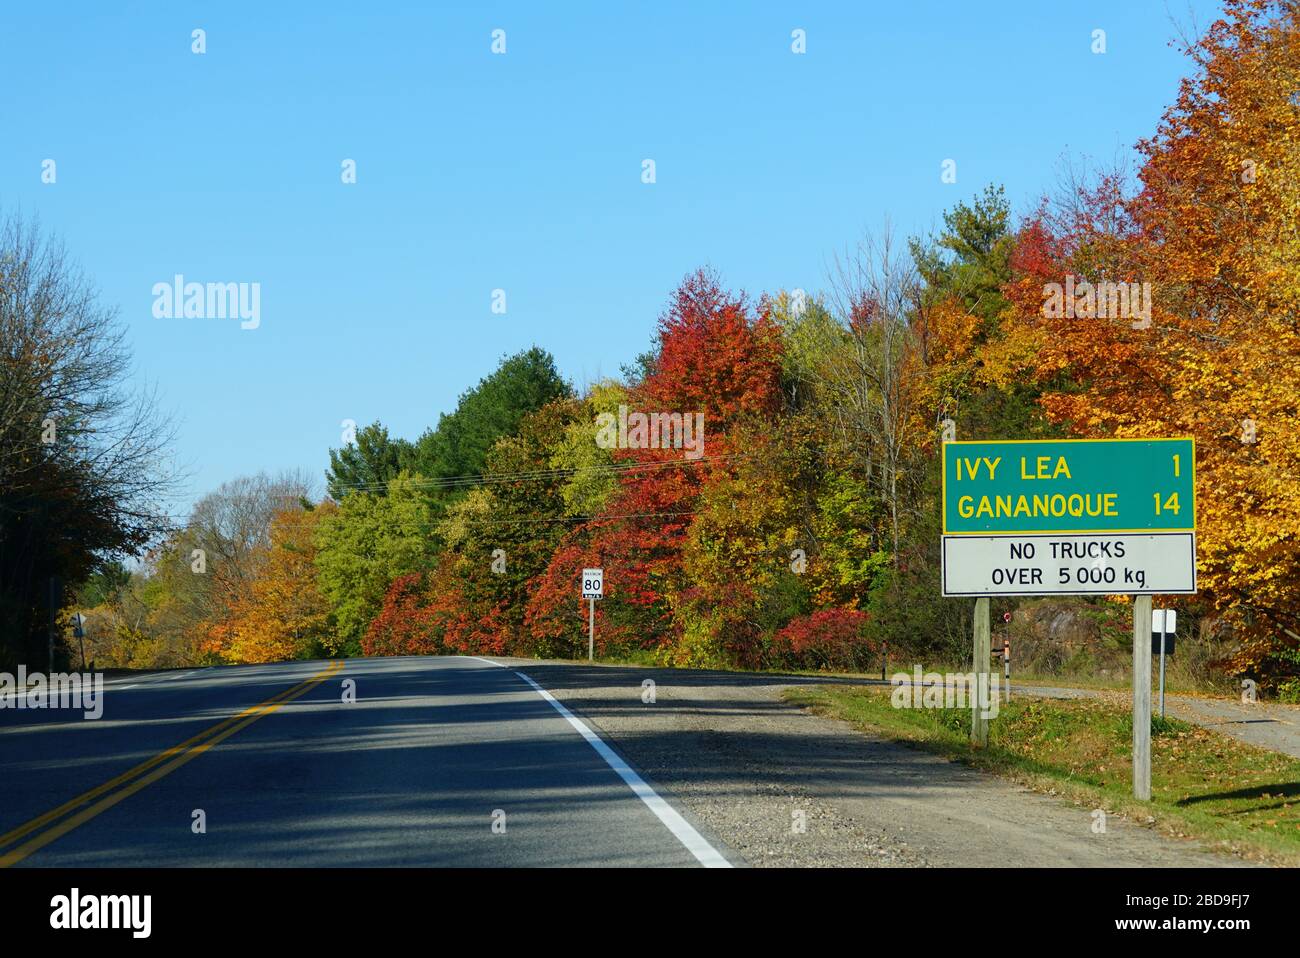 Ontario, Canada - le 28 octobre 2019 - la vue de la route vers Ivy Lea et Gananoque avec des feuilles d'automne frappantes Banque D'Images